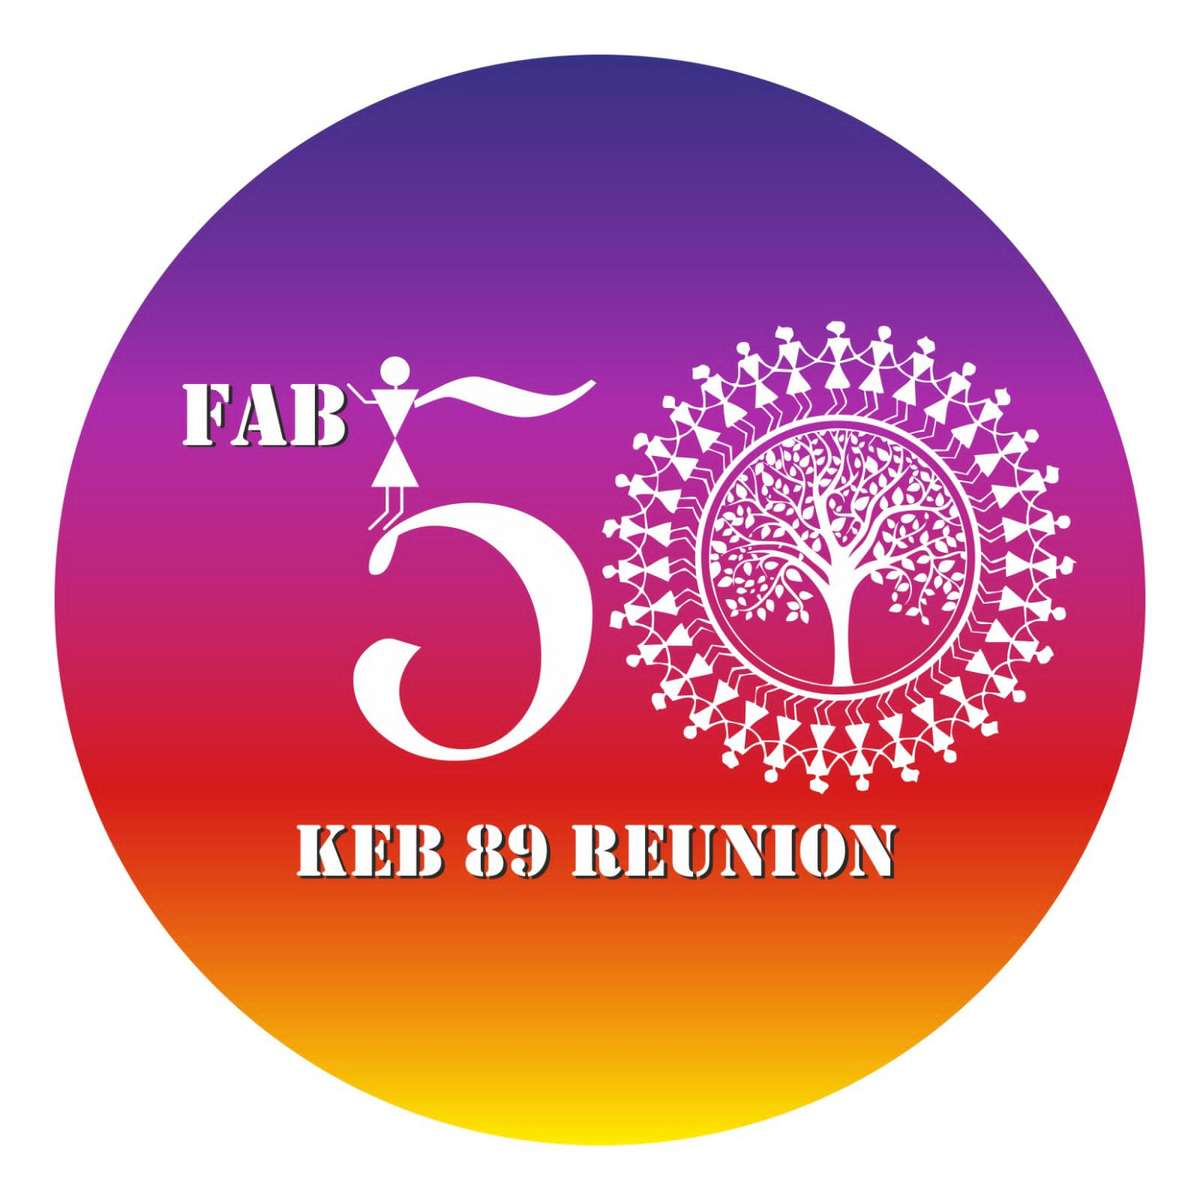 KEB89 FAB50 онлайн пъзел